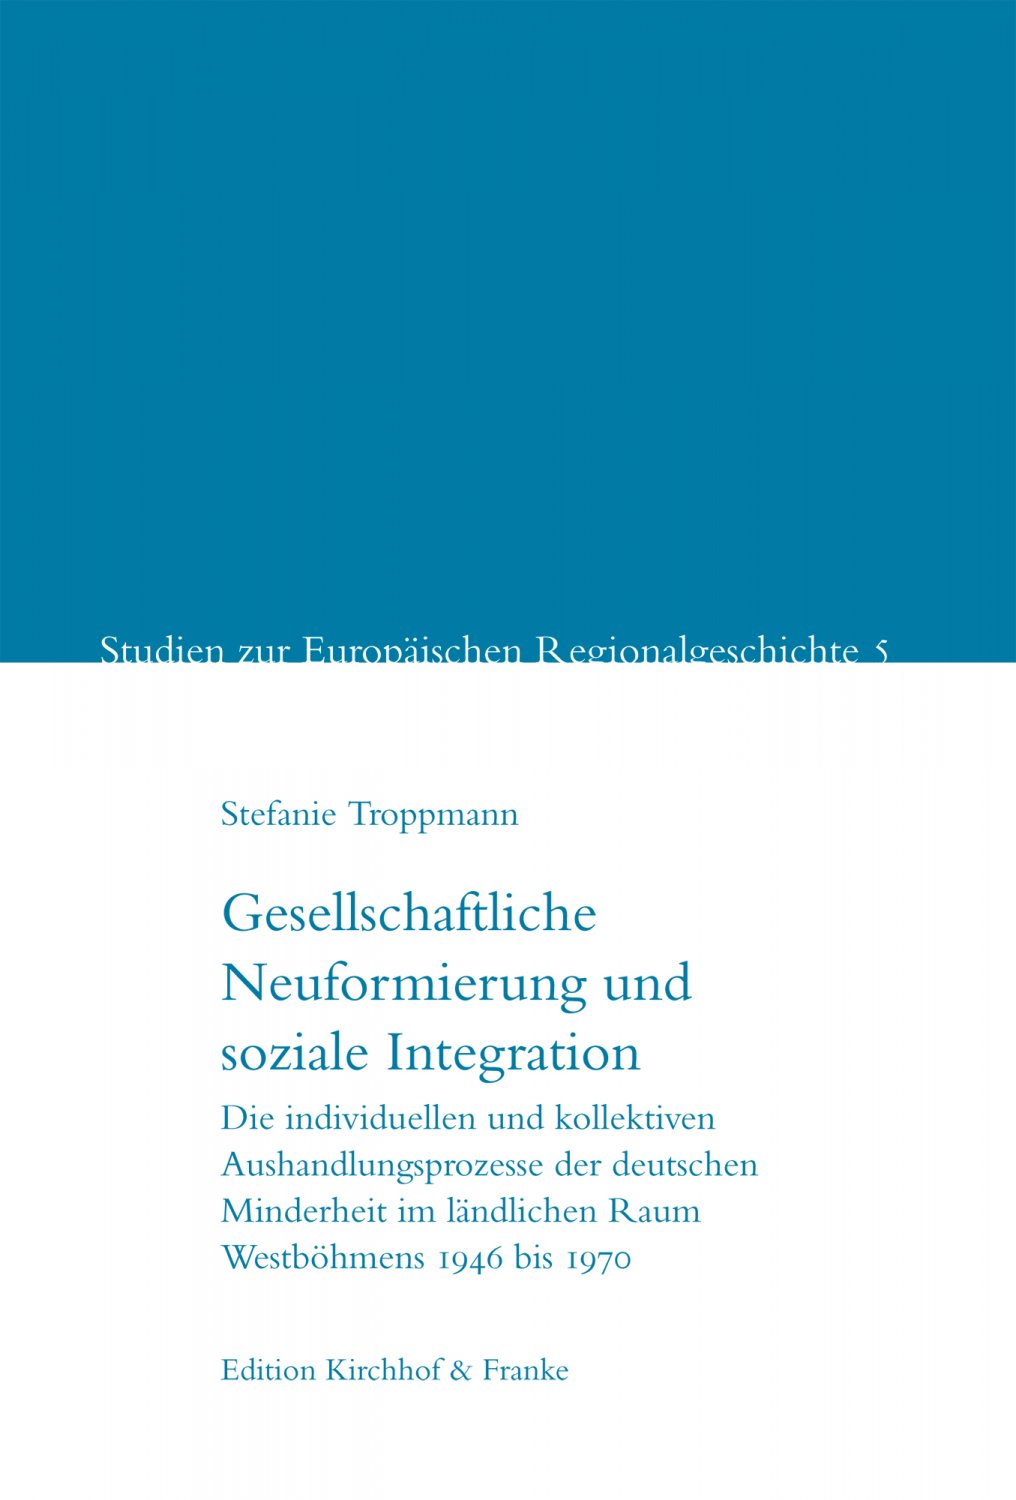 Einbandvorderseite der Publikation, Link zur Publikation auf der Website des Verlages Edition Kirchhof & Franke.